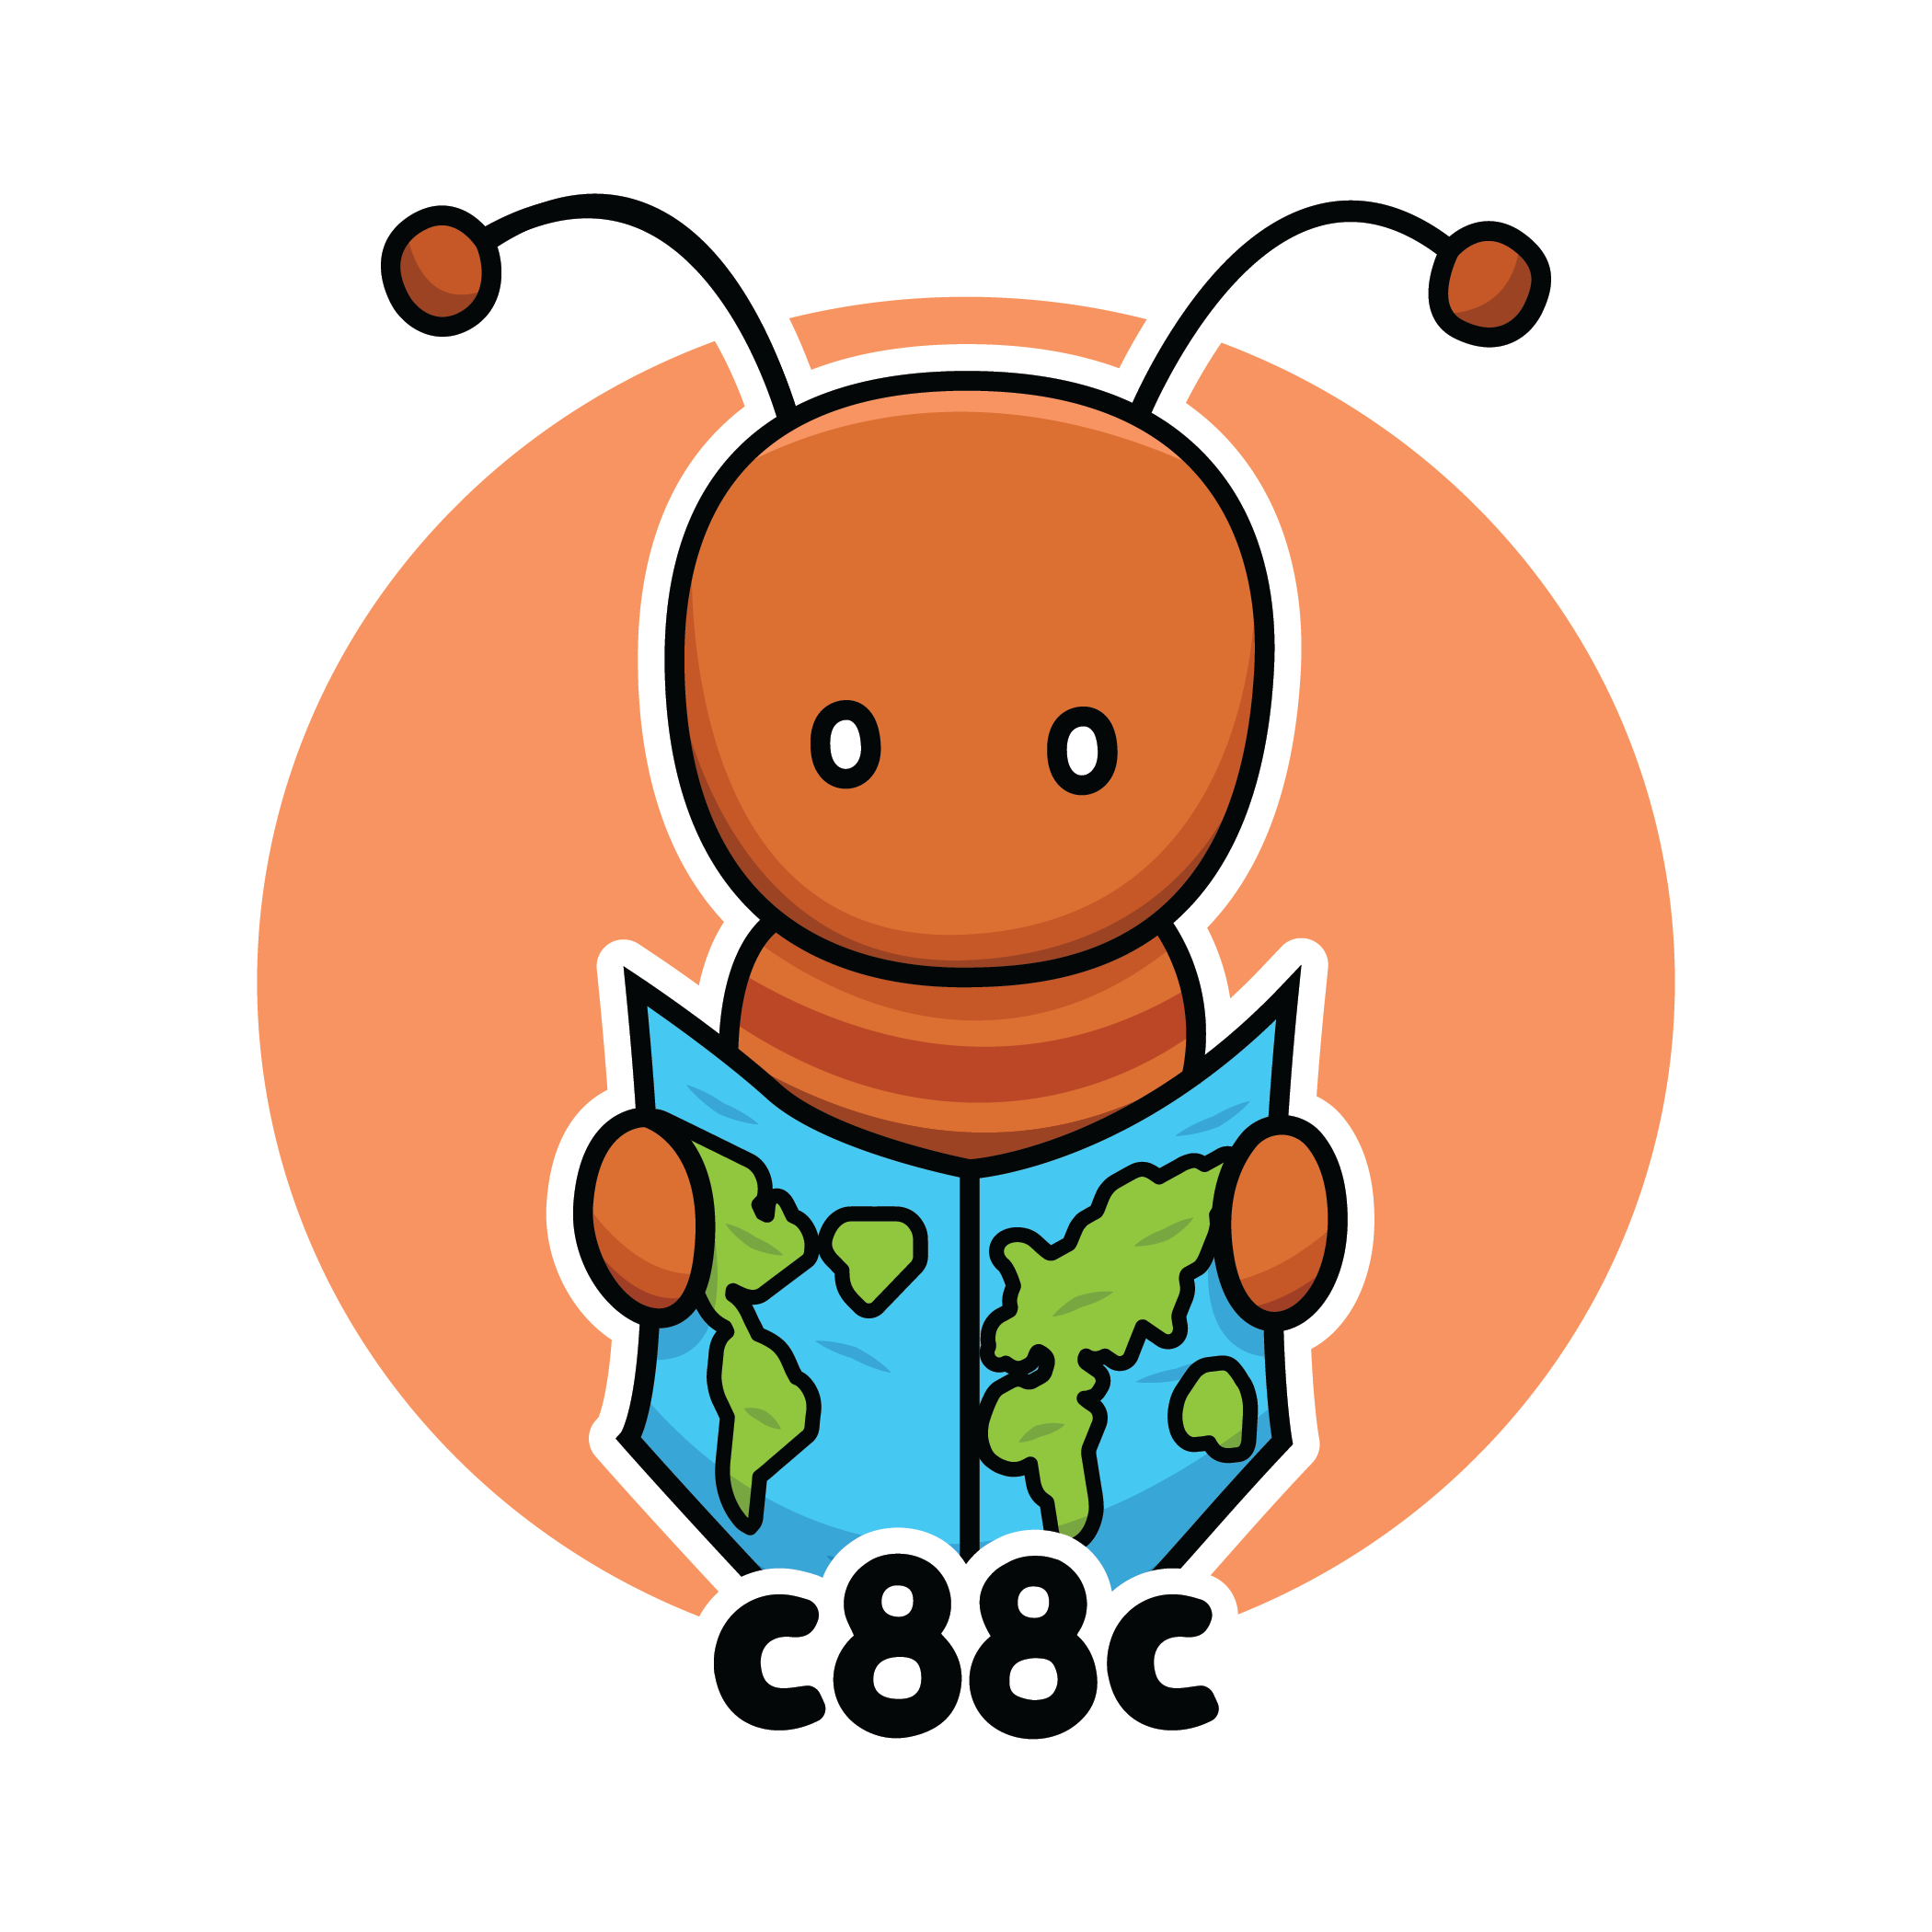 c88c logo